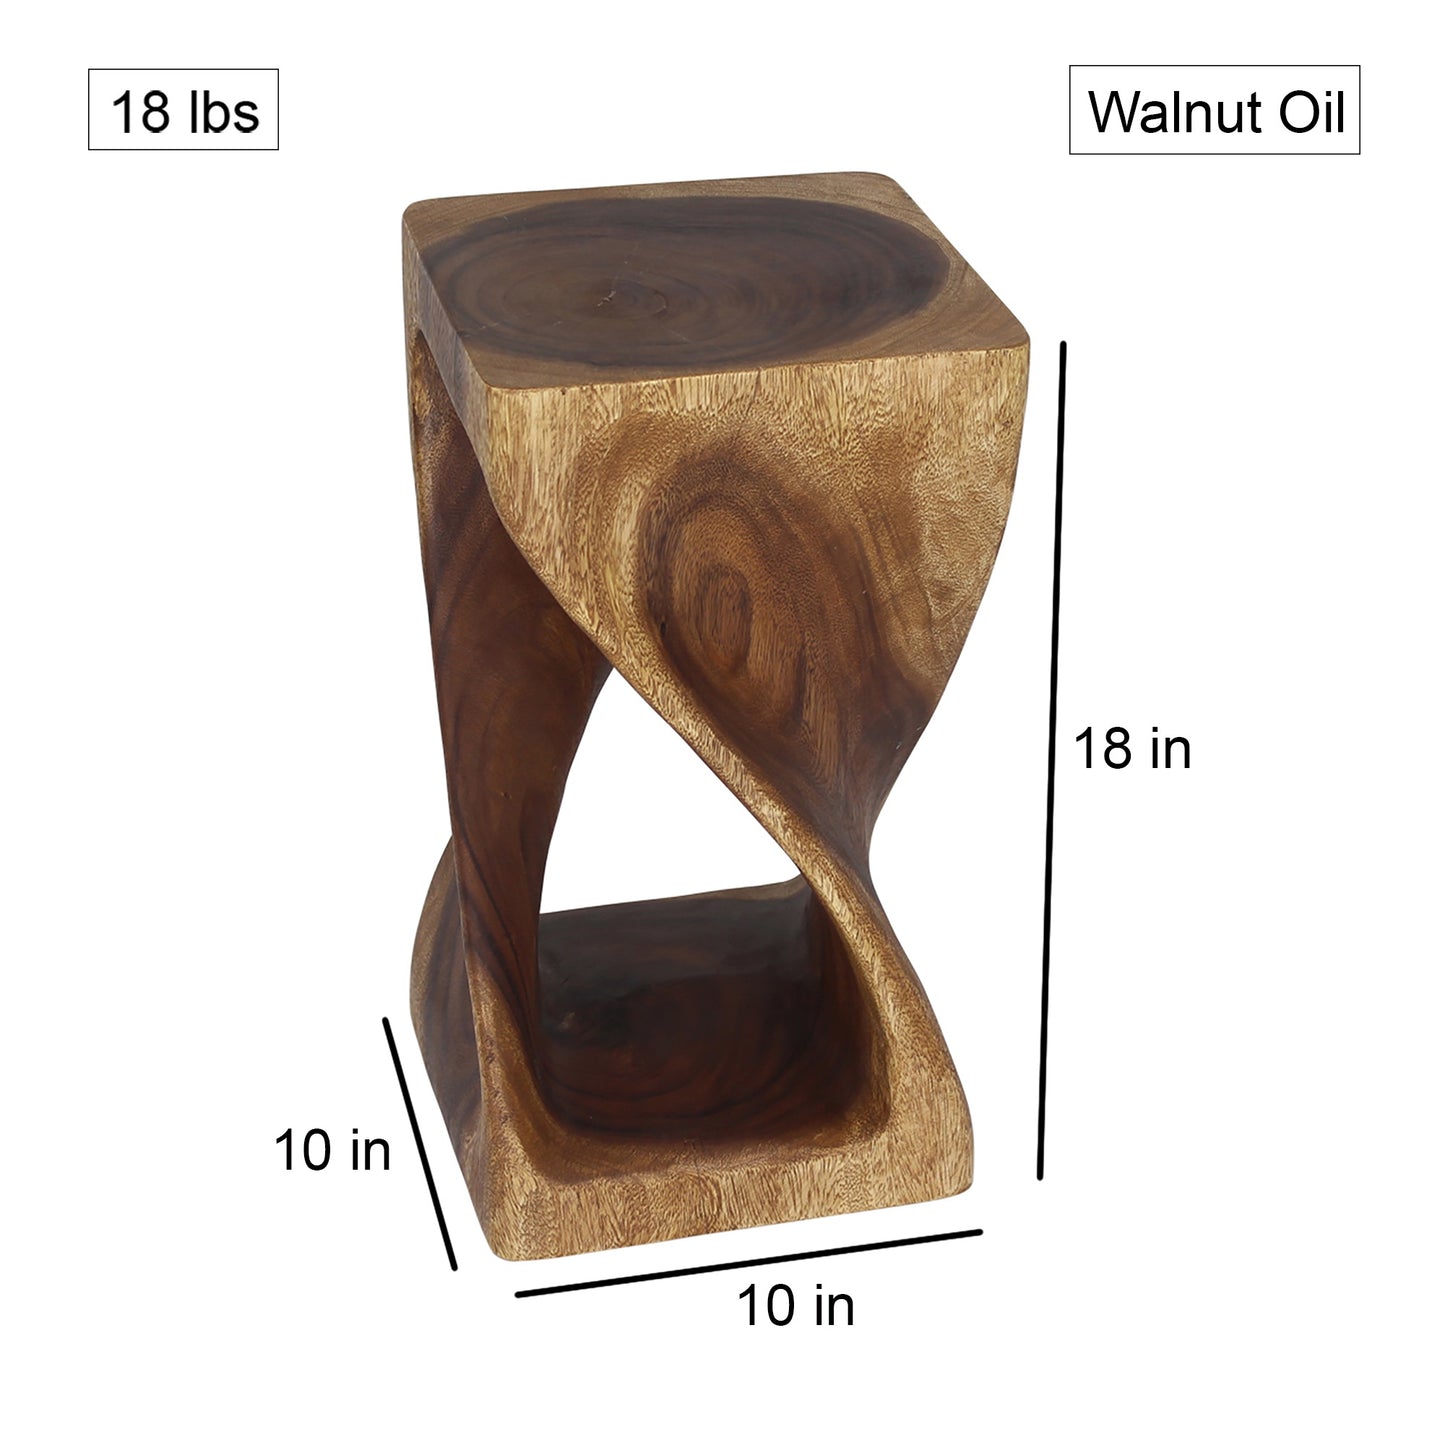 Haussmann® Original Wood Twist Stool 10 X 10 X 18 In High Walnut Oil